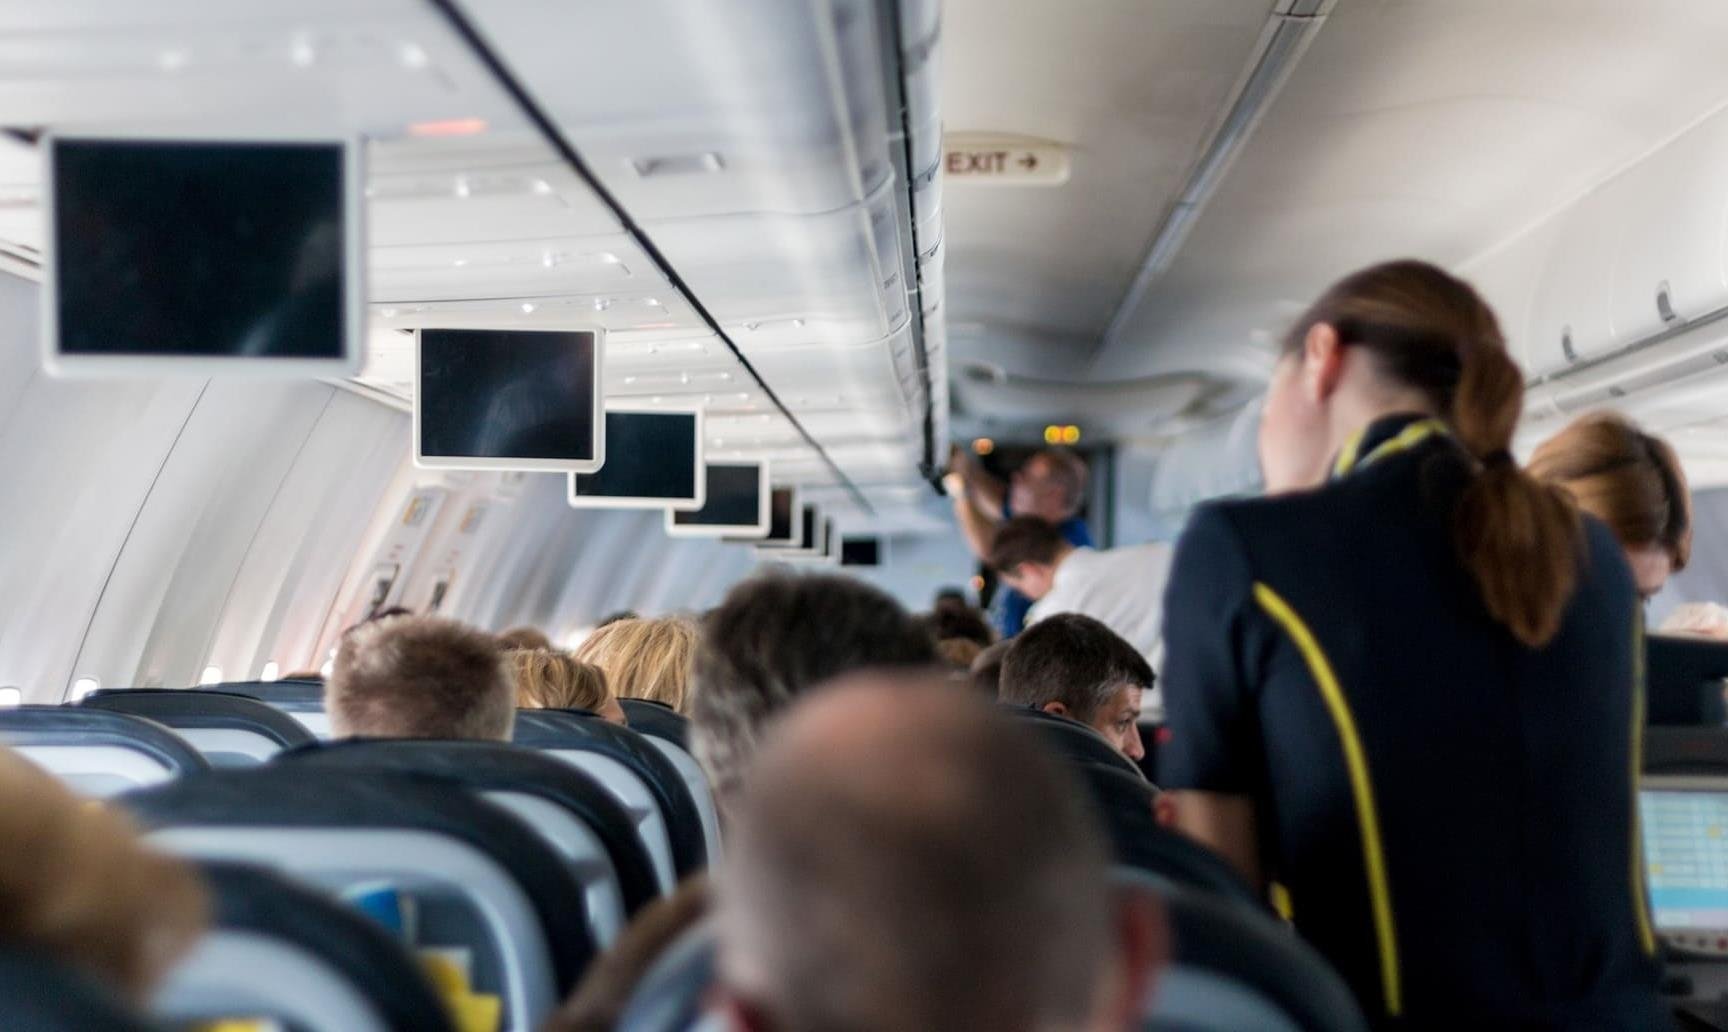 Стюардесса предупредила, почему опасно для жизни пить чай или кофе в самолете